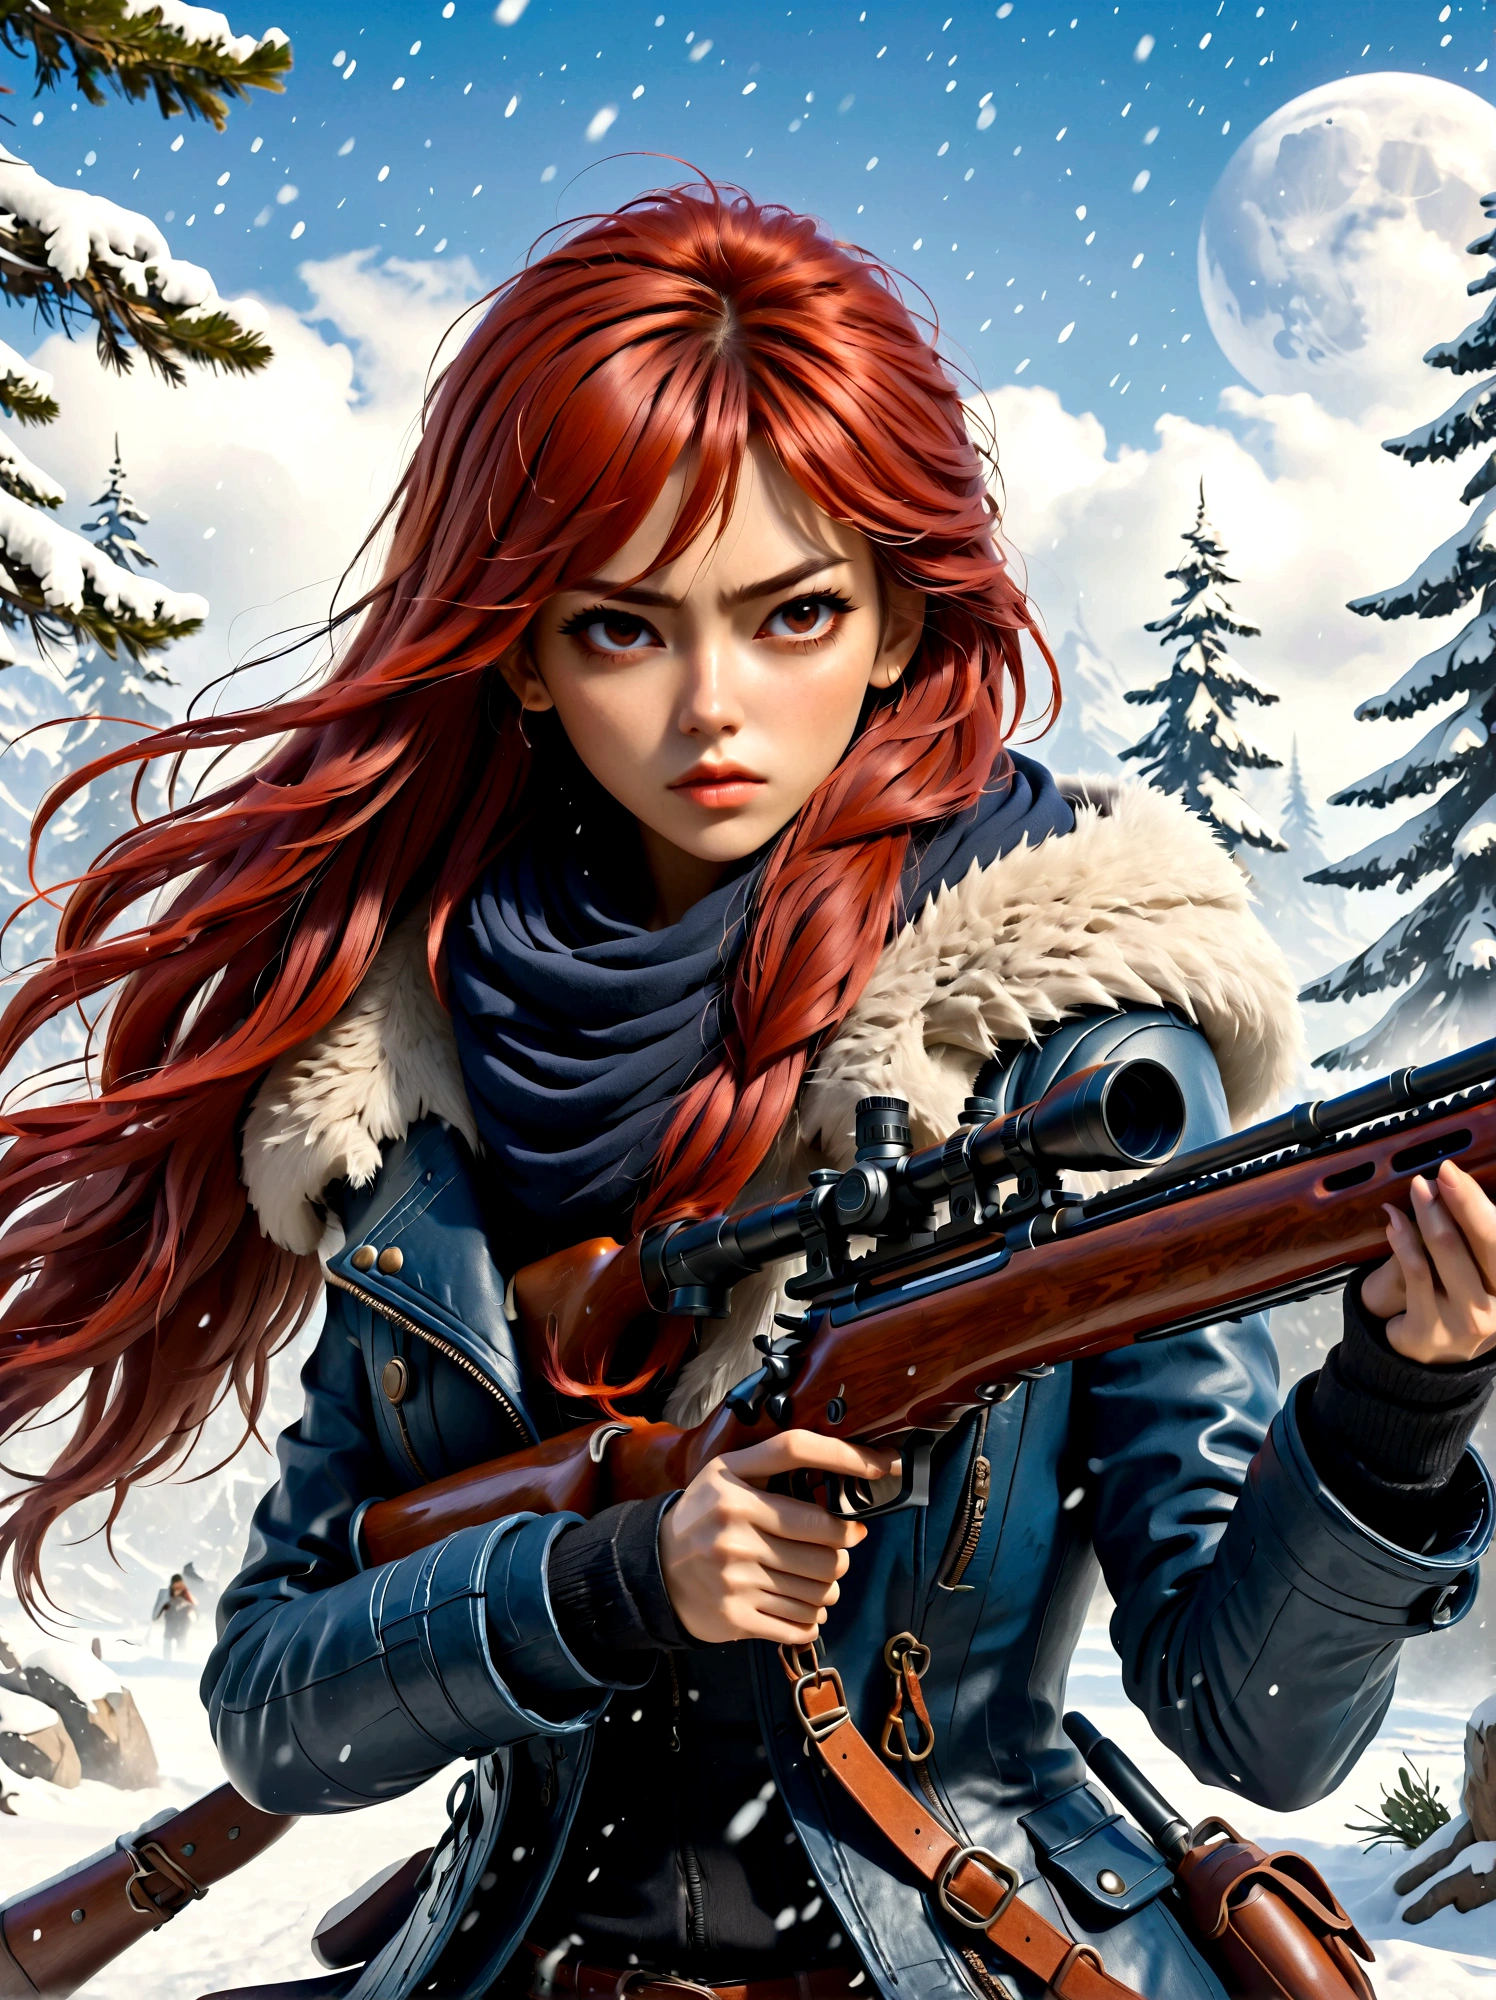 Menina segurando um rifle, (Olhar enojado:1.5), Pose de luta na neve, leste, Lâmina e alma, estilo de tinta, longos cabelos ruivos, Casacos de couro e pele, frio, obra de arte, 3d, 4K, detalhado, Prático